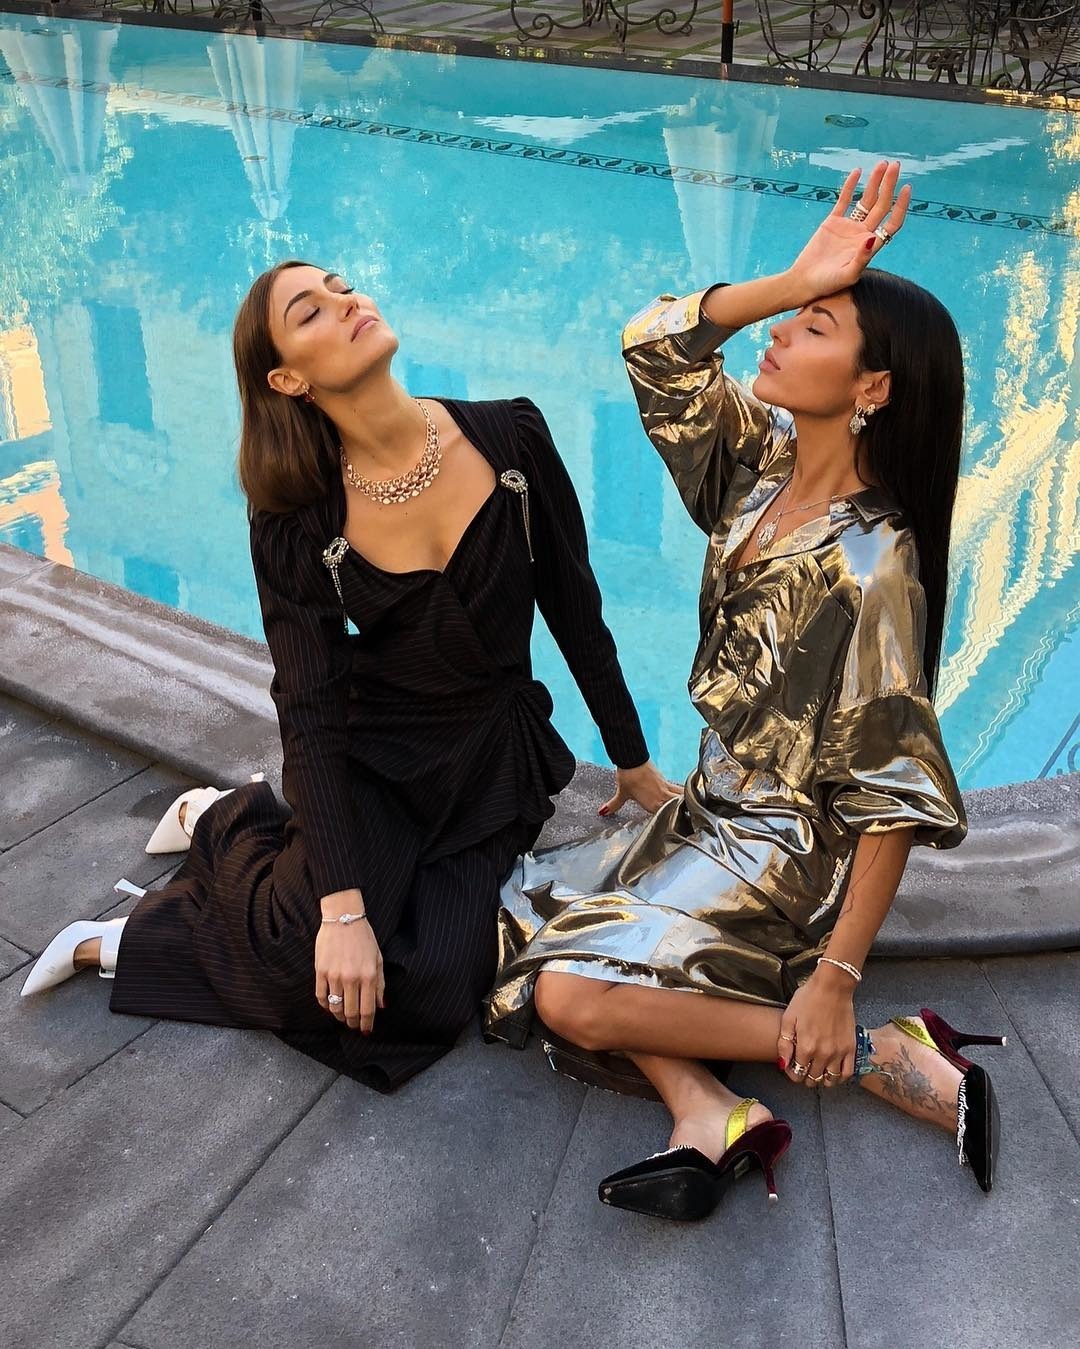 Kylie Jenner'dan Lena Perminova'ya Yılın Işıltılı Moda Instagramları